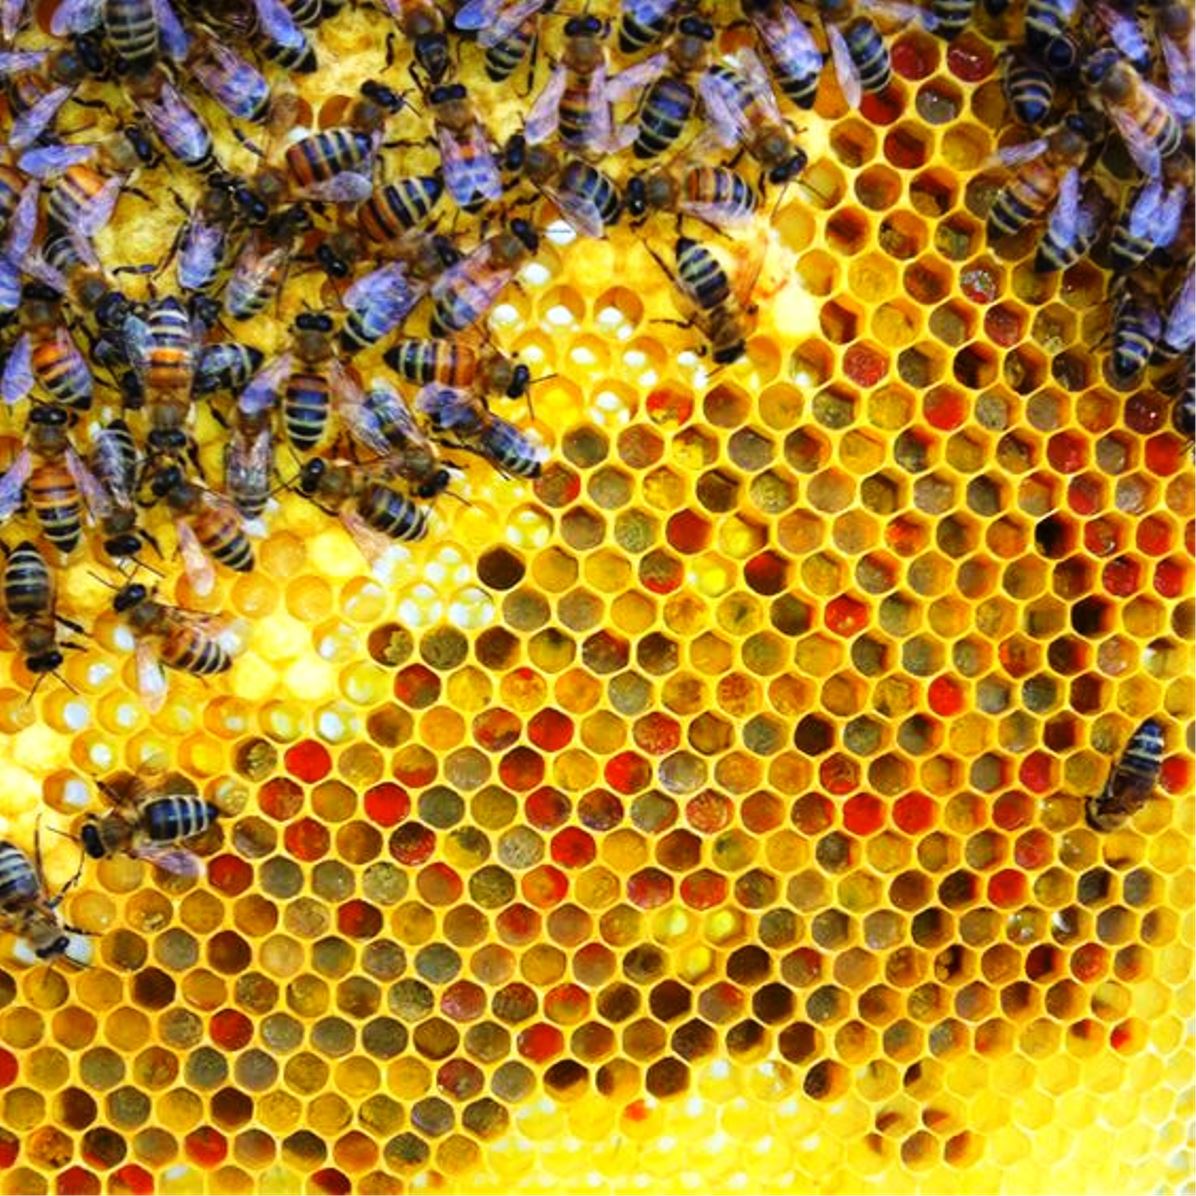 Las abejan producen miel de acuerdo al tipo de polen